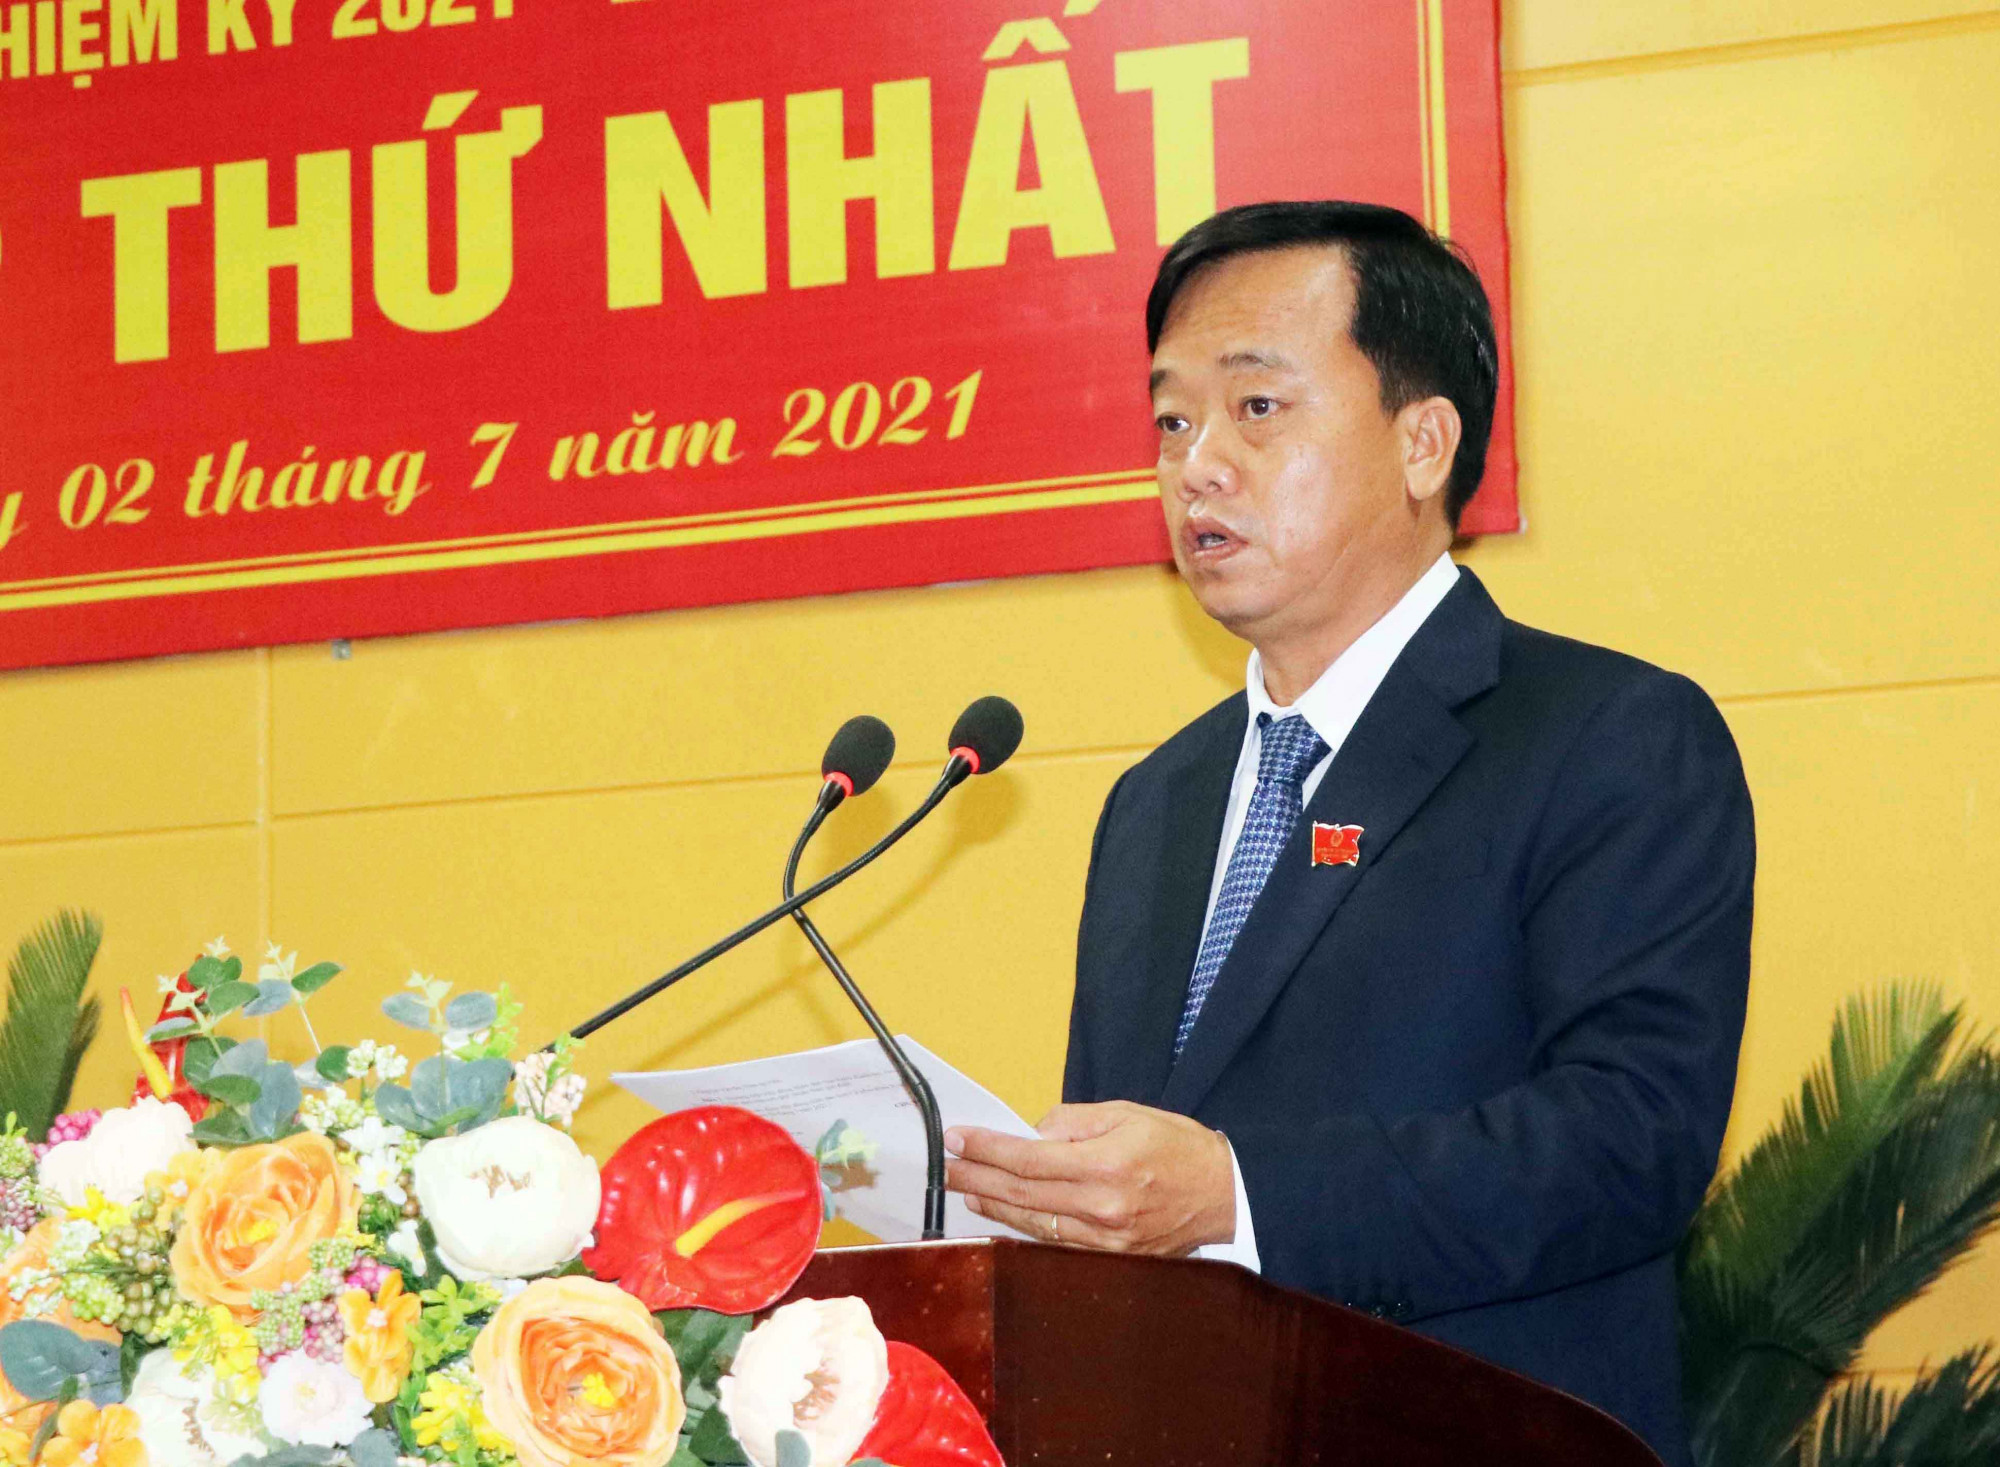 Ông Huỳnh Quốc Việt là tân Chủ tịch UBND tỉnh Cà Mau. Ảnh: HA.